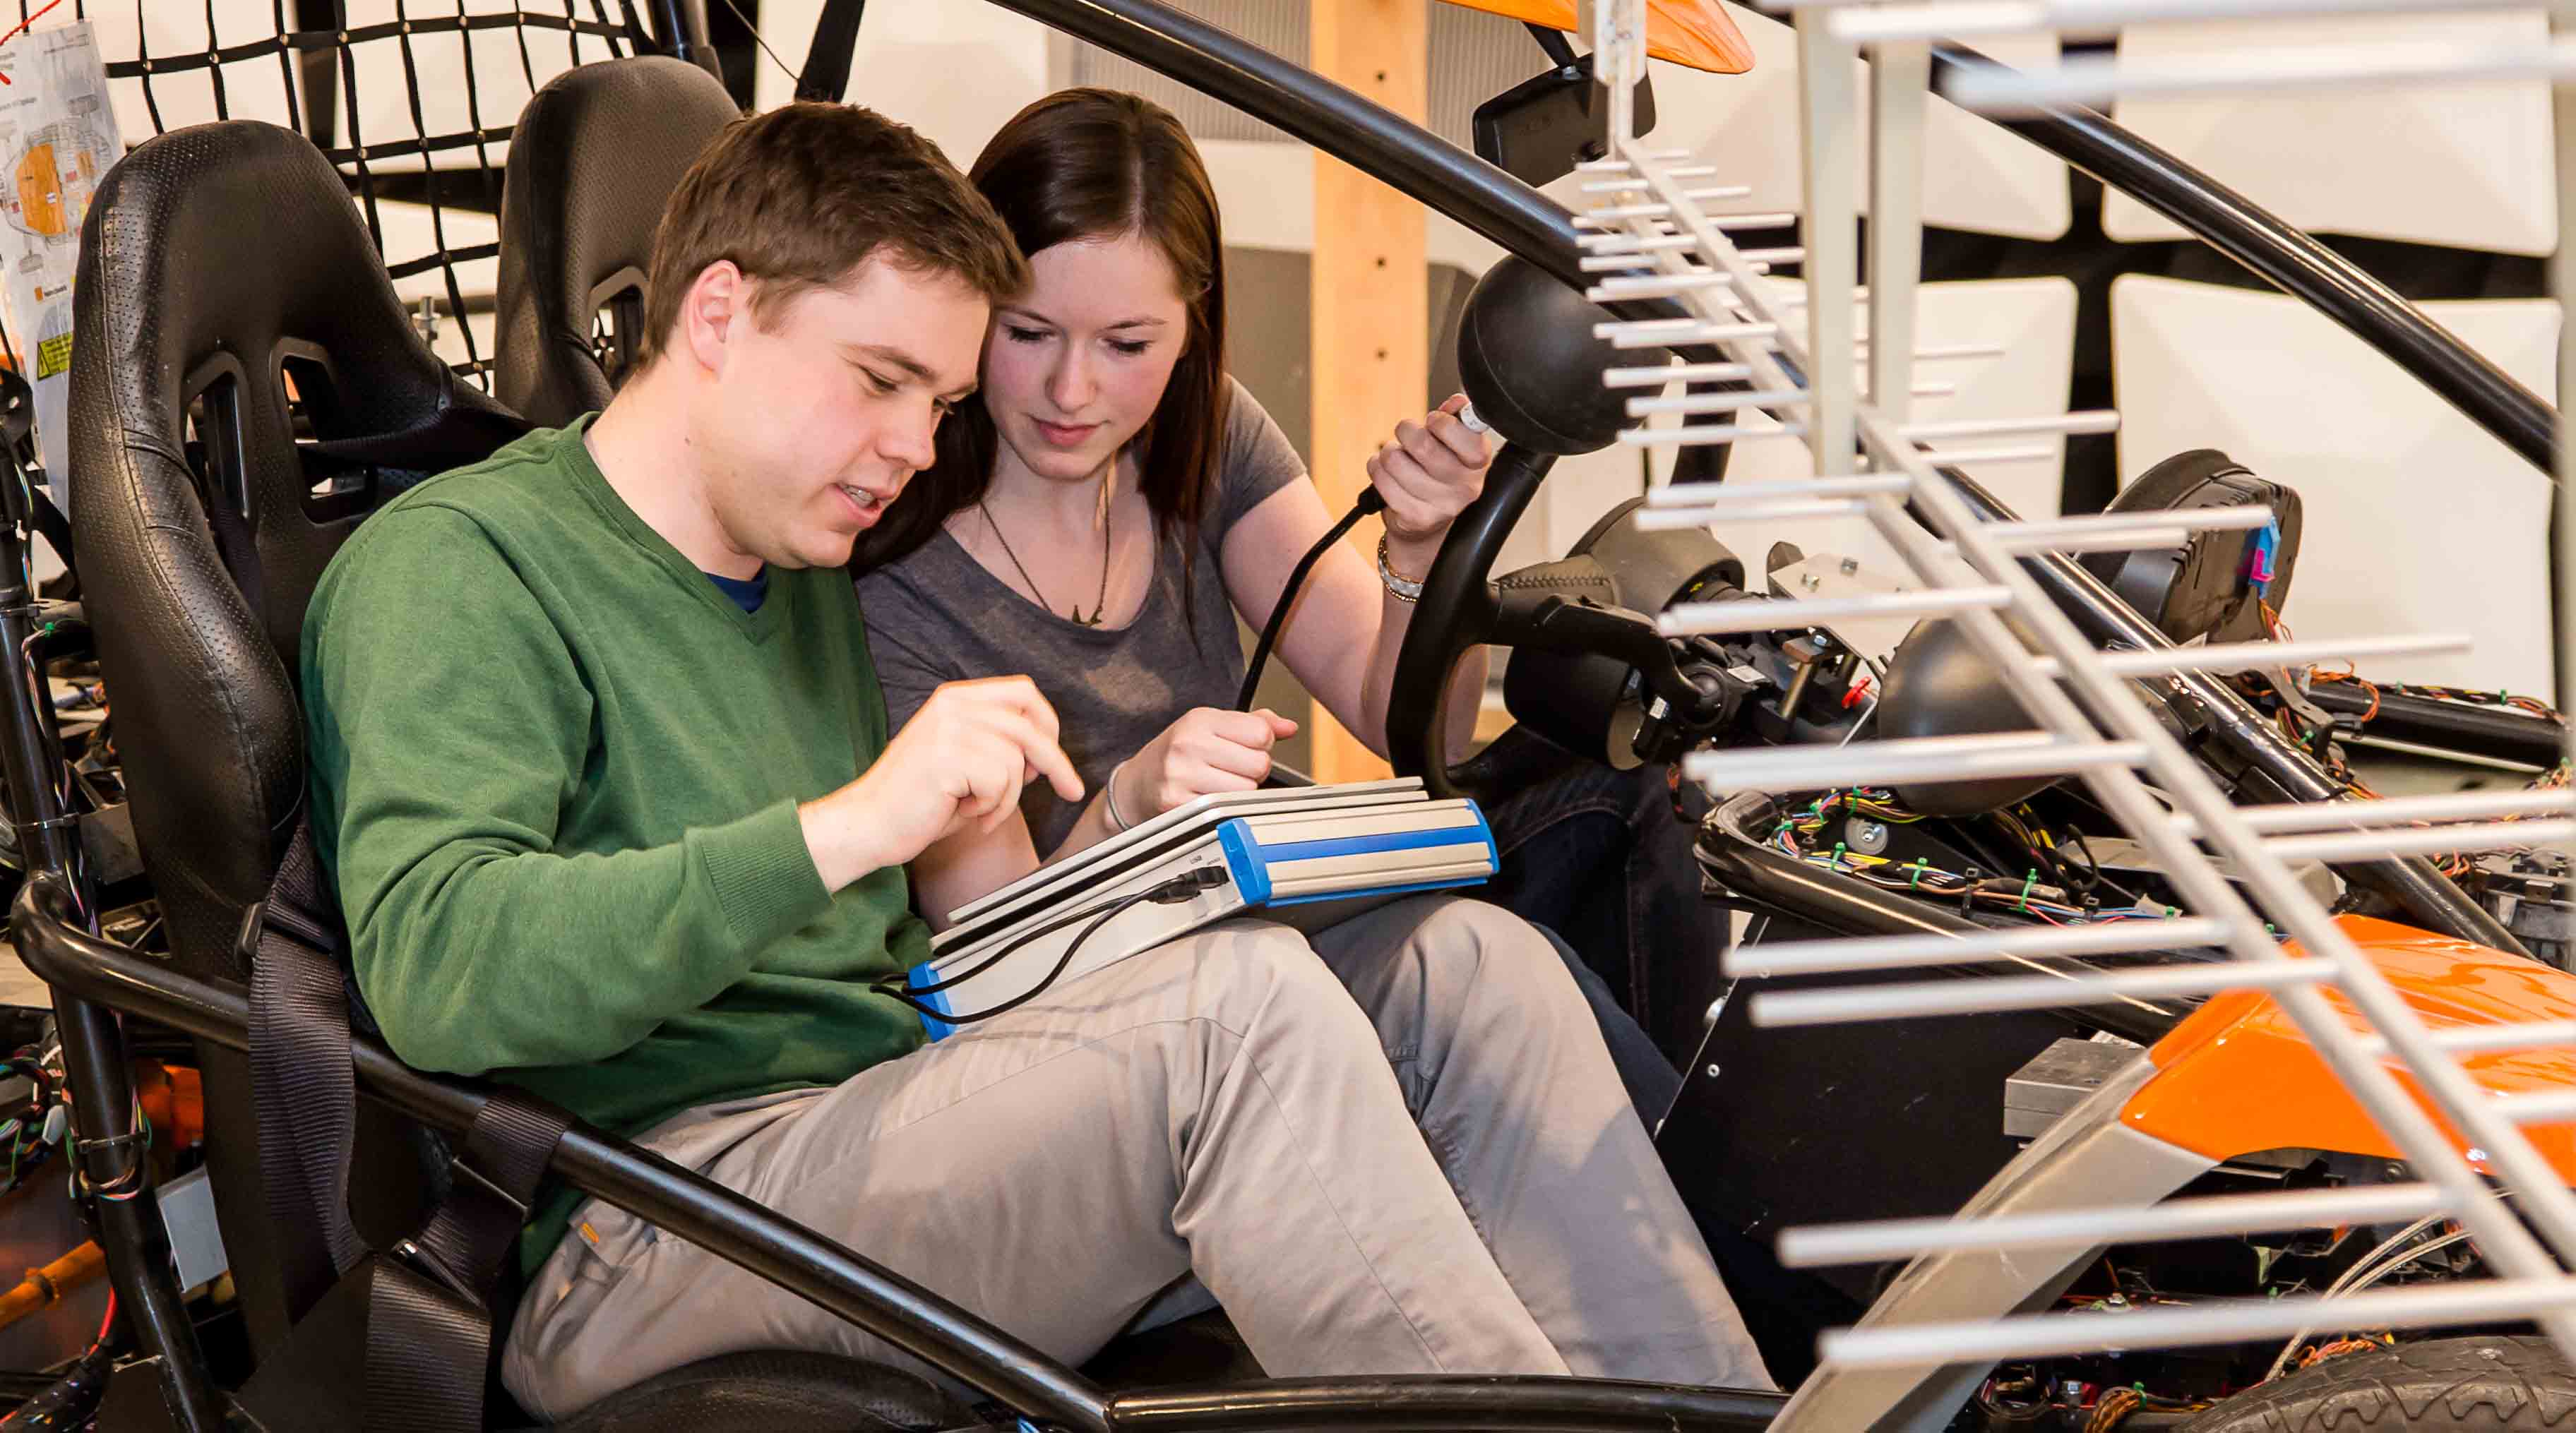 Foto: Blick ins Zentrum für Kraftfahrzeugelektronik. Zwei Studierende sitzen in einem Fahrzeug und tätigen mit einem Messgerät elektromagnetische Untersuchungen.